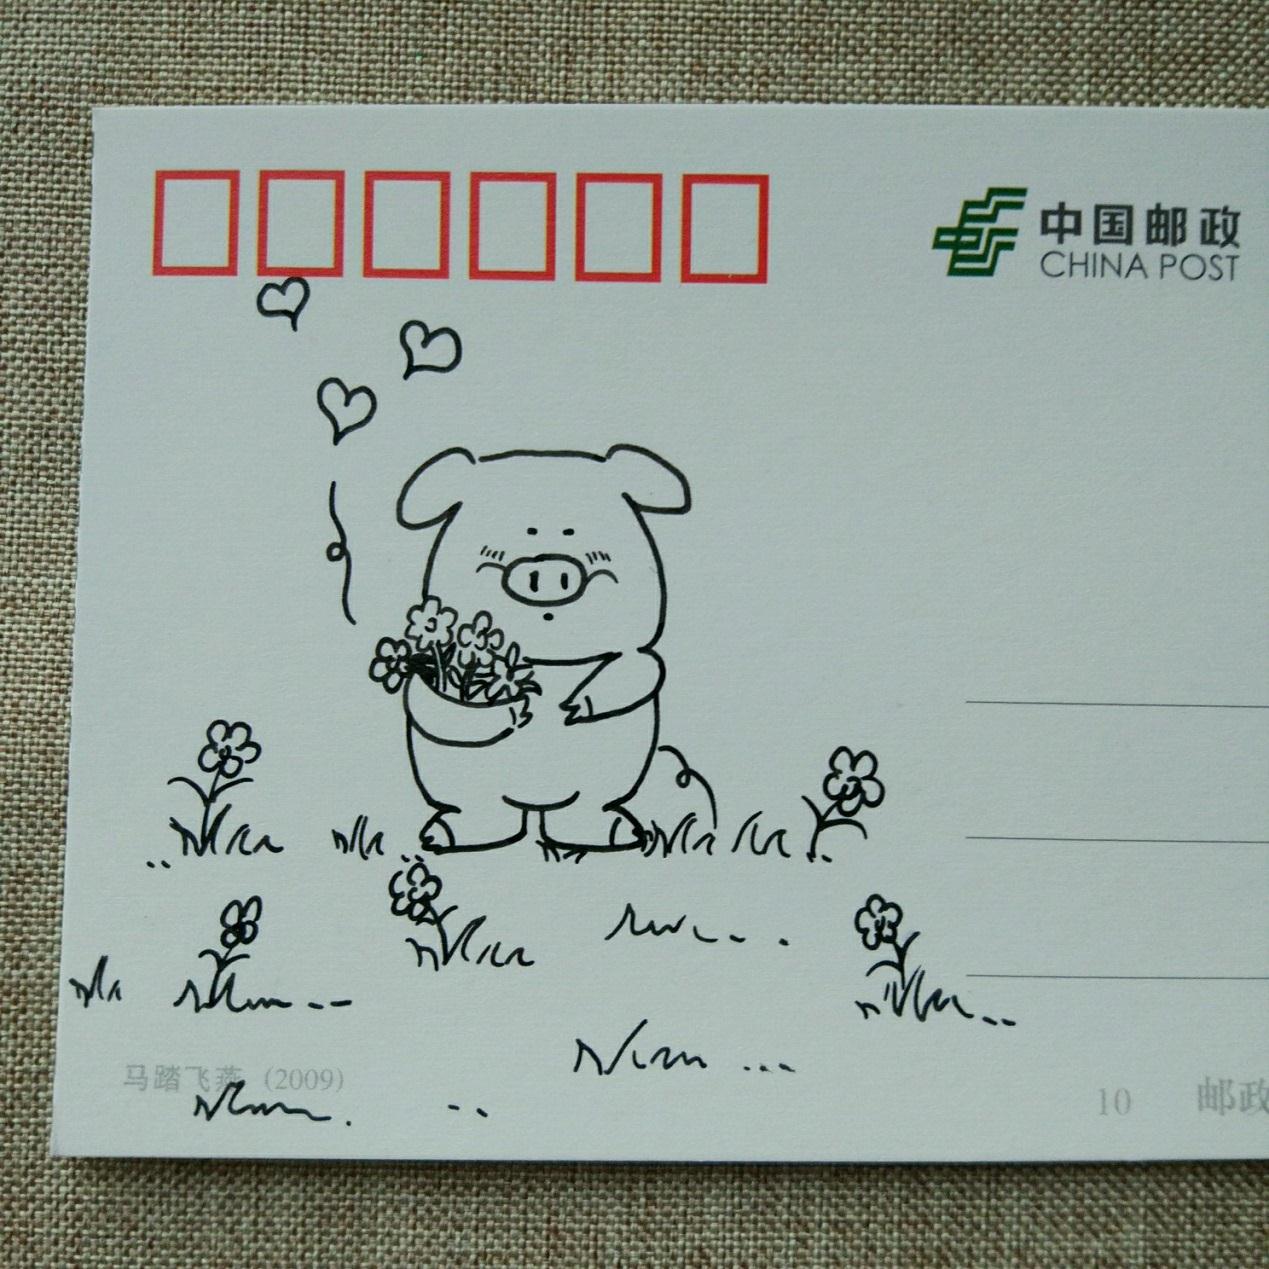 手工绘贺卡明信片手工制作方法,有趣的动物diy手绘明信片超萌的小猪